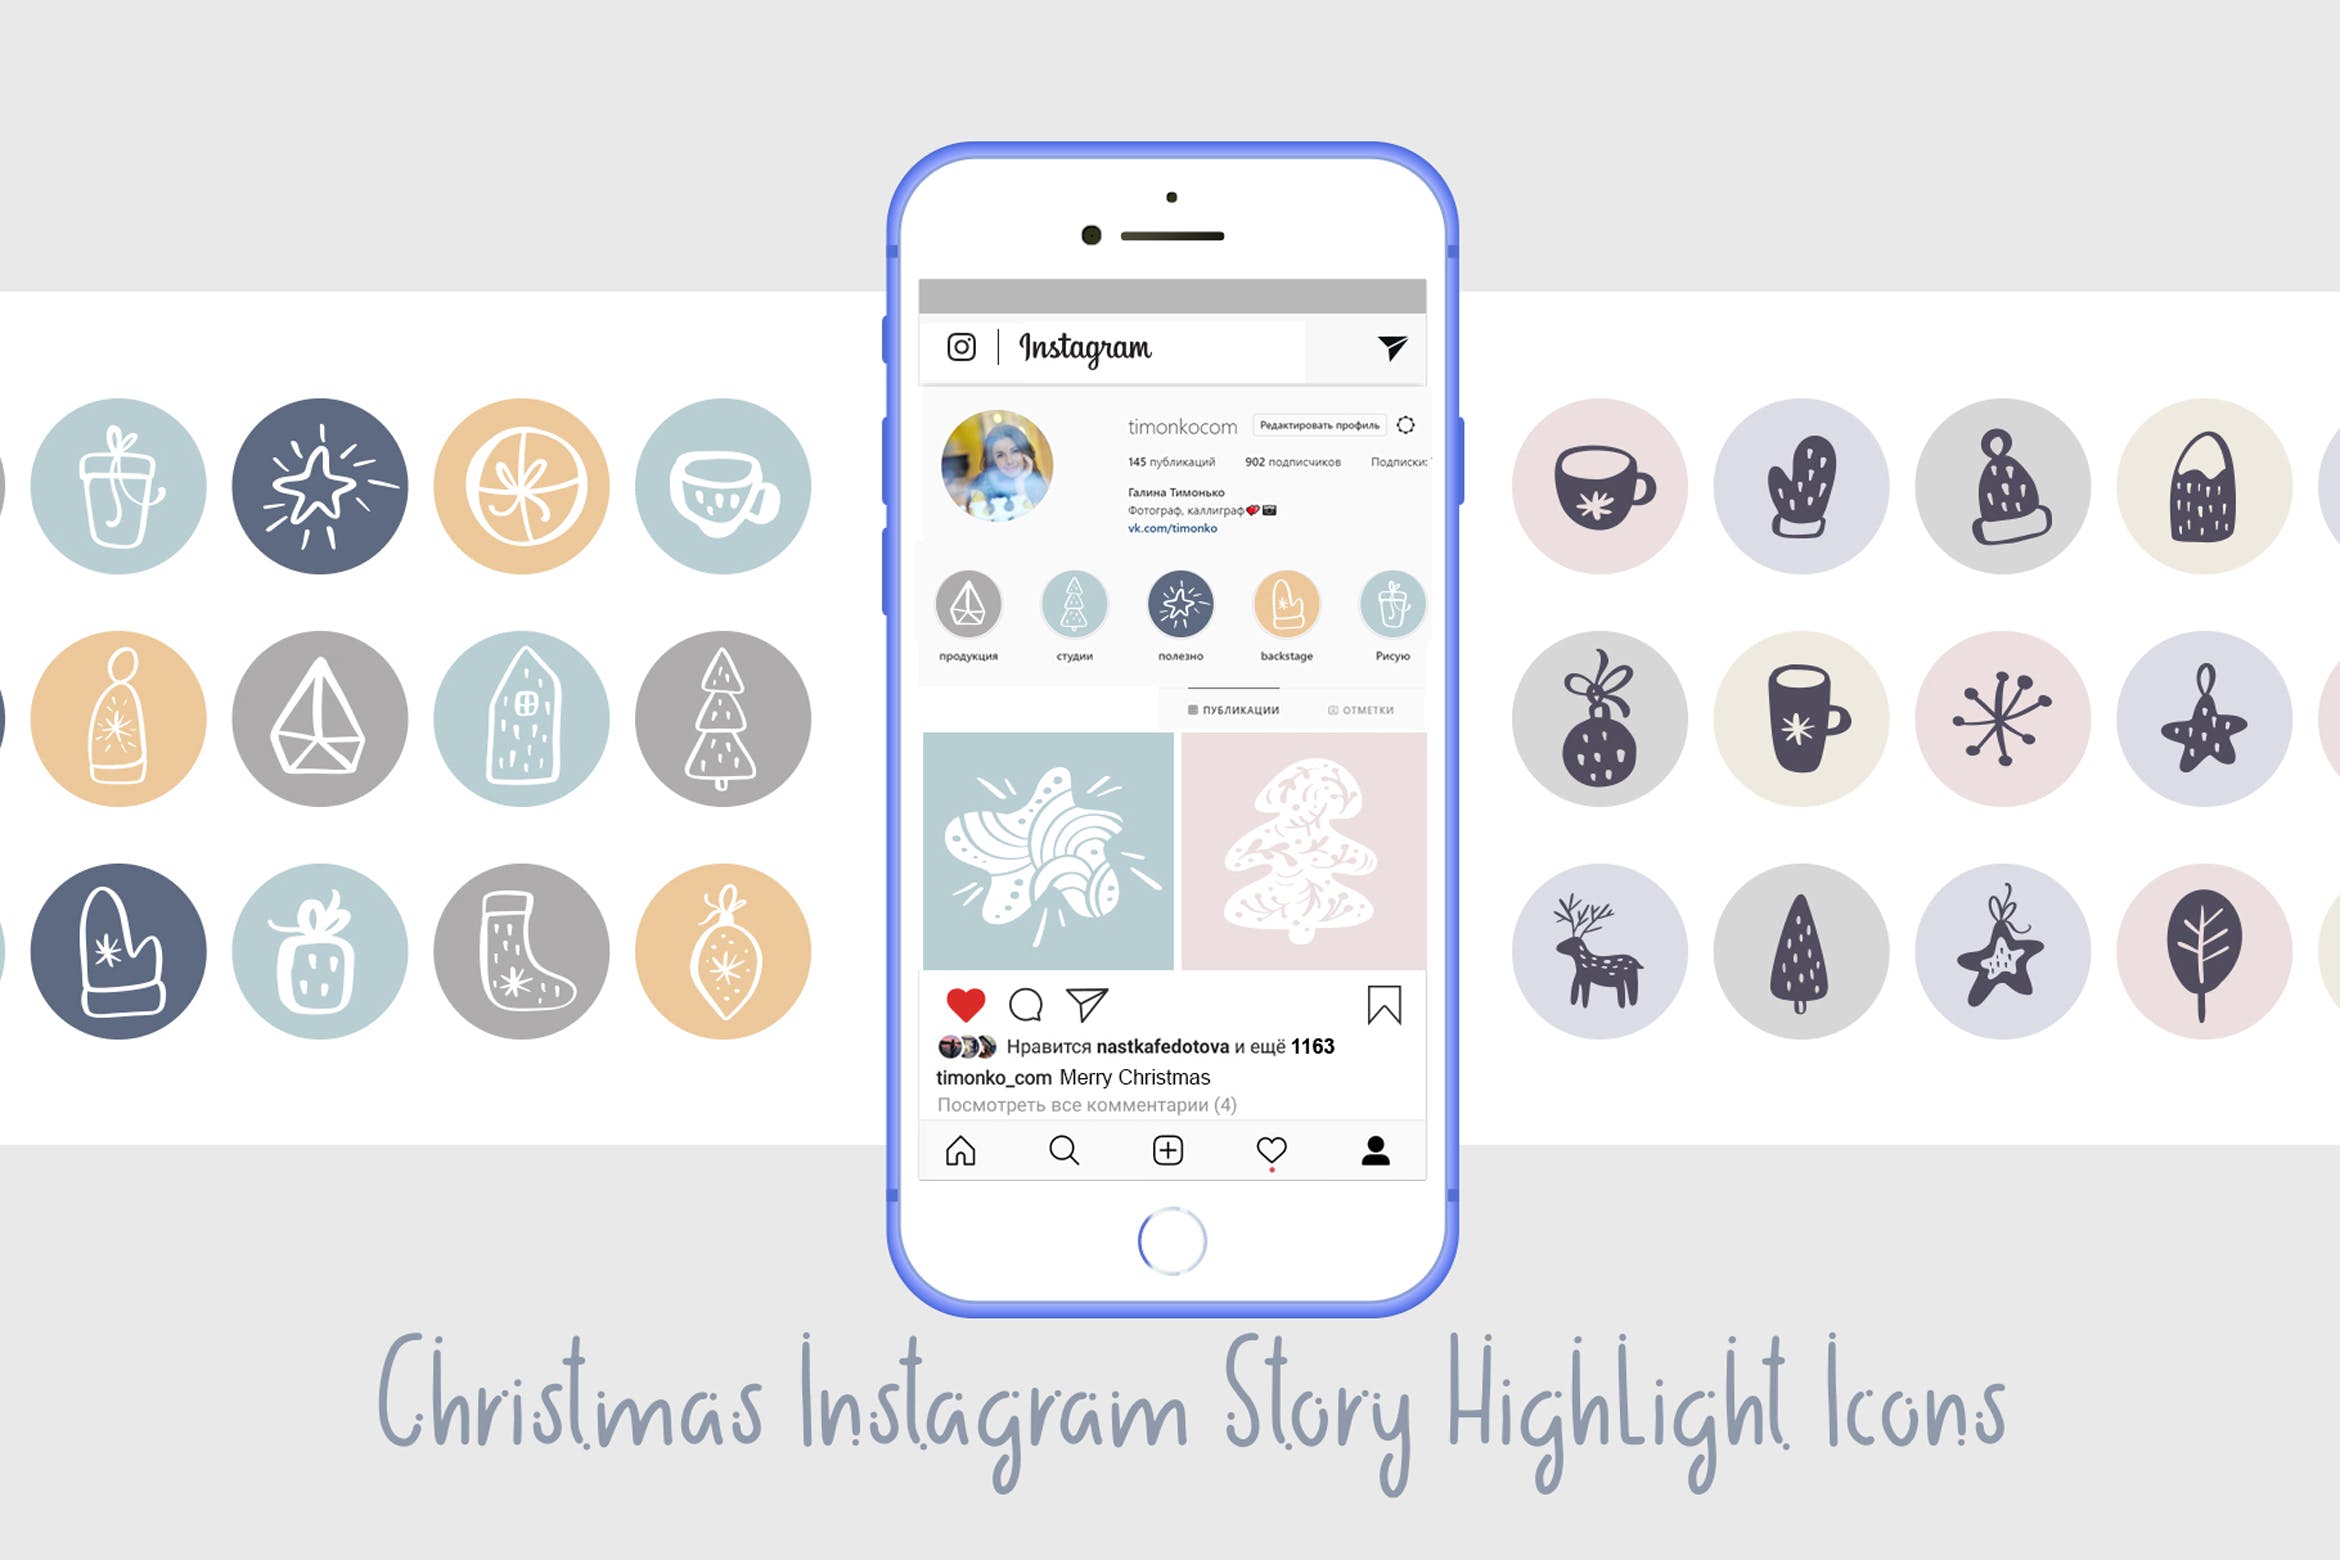 圣诞节主题矢量手绘素材库精选图标素材 Christmas Instagram highlight story icons插图